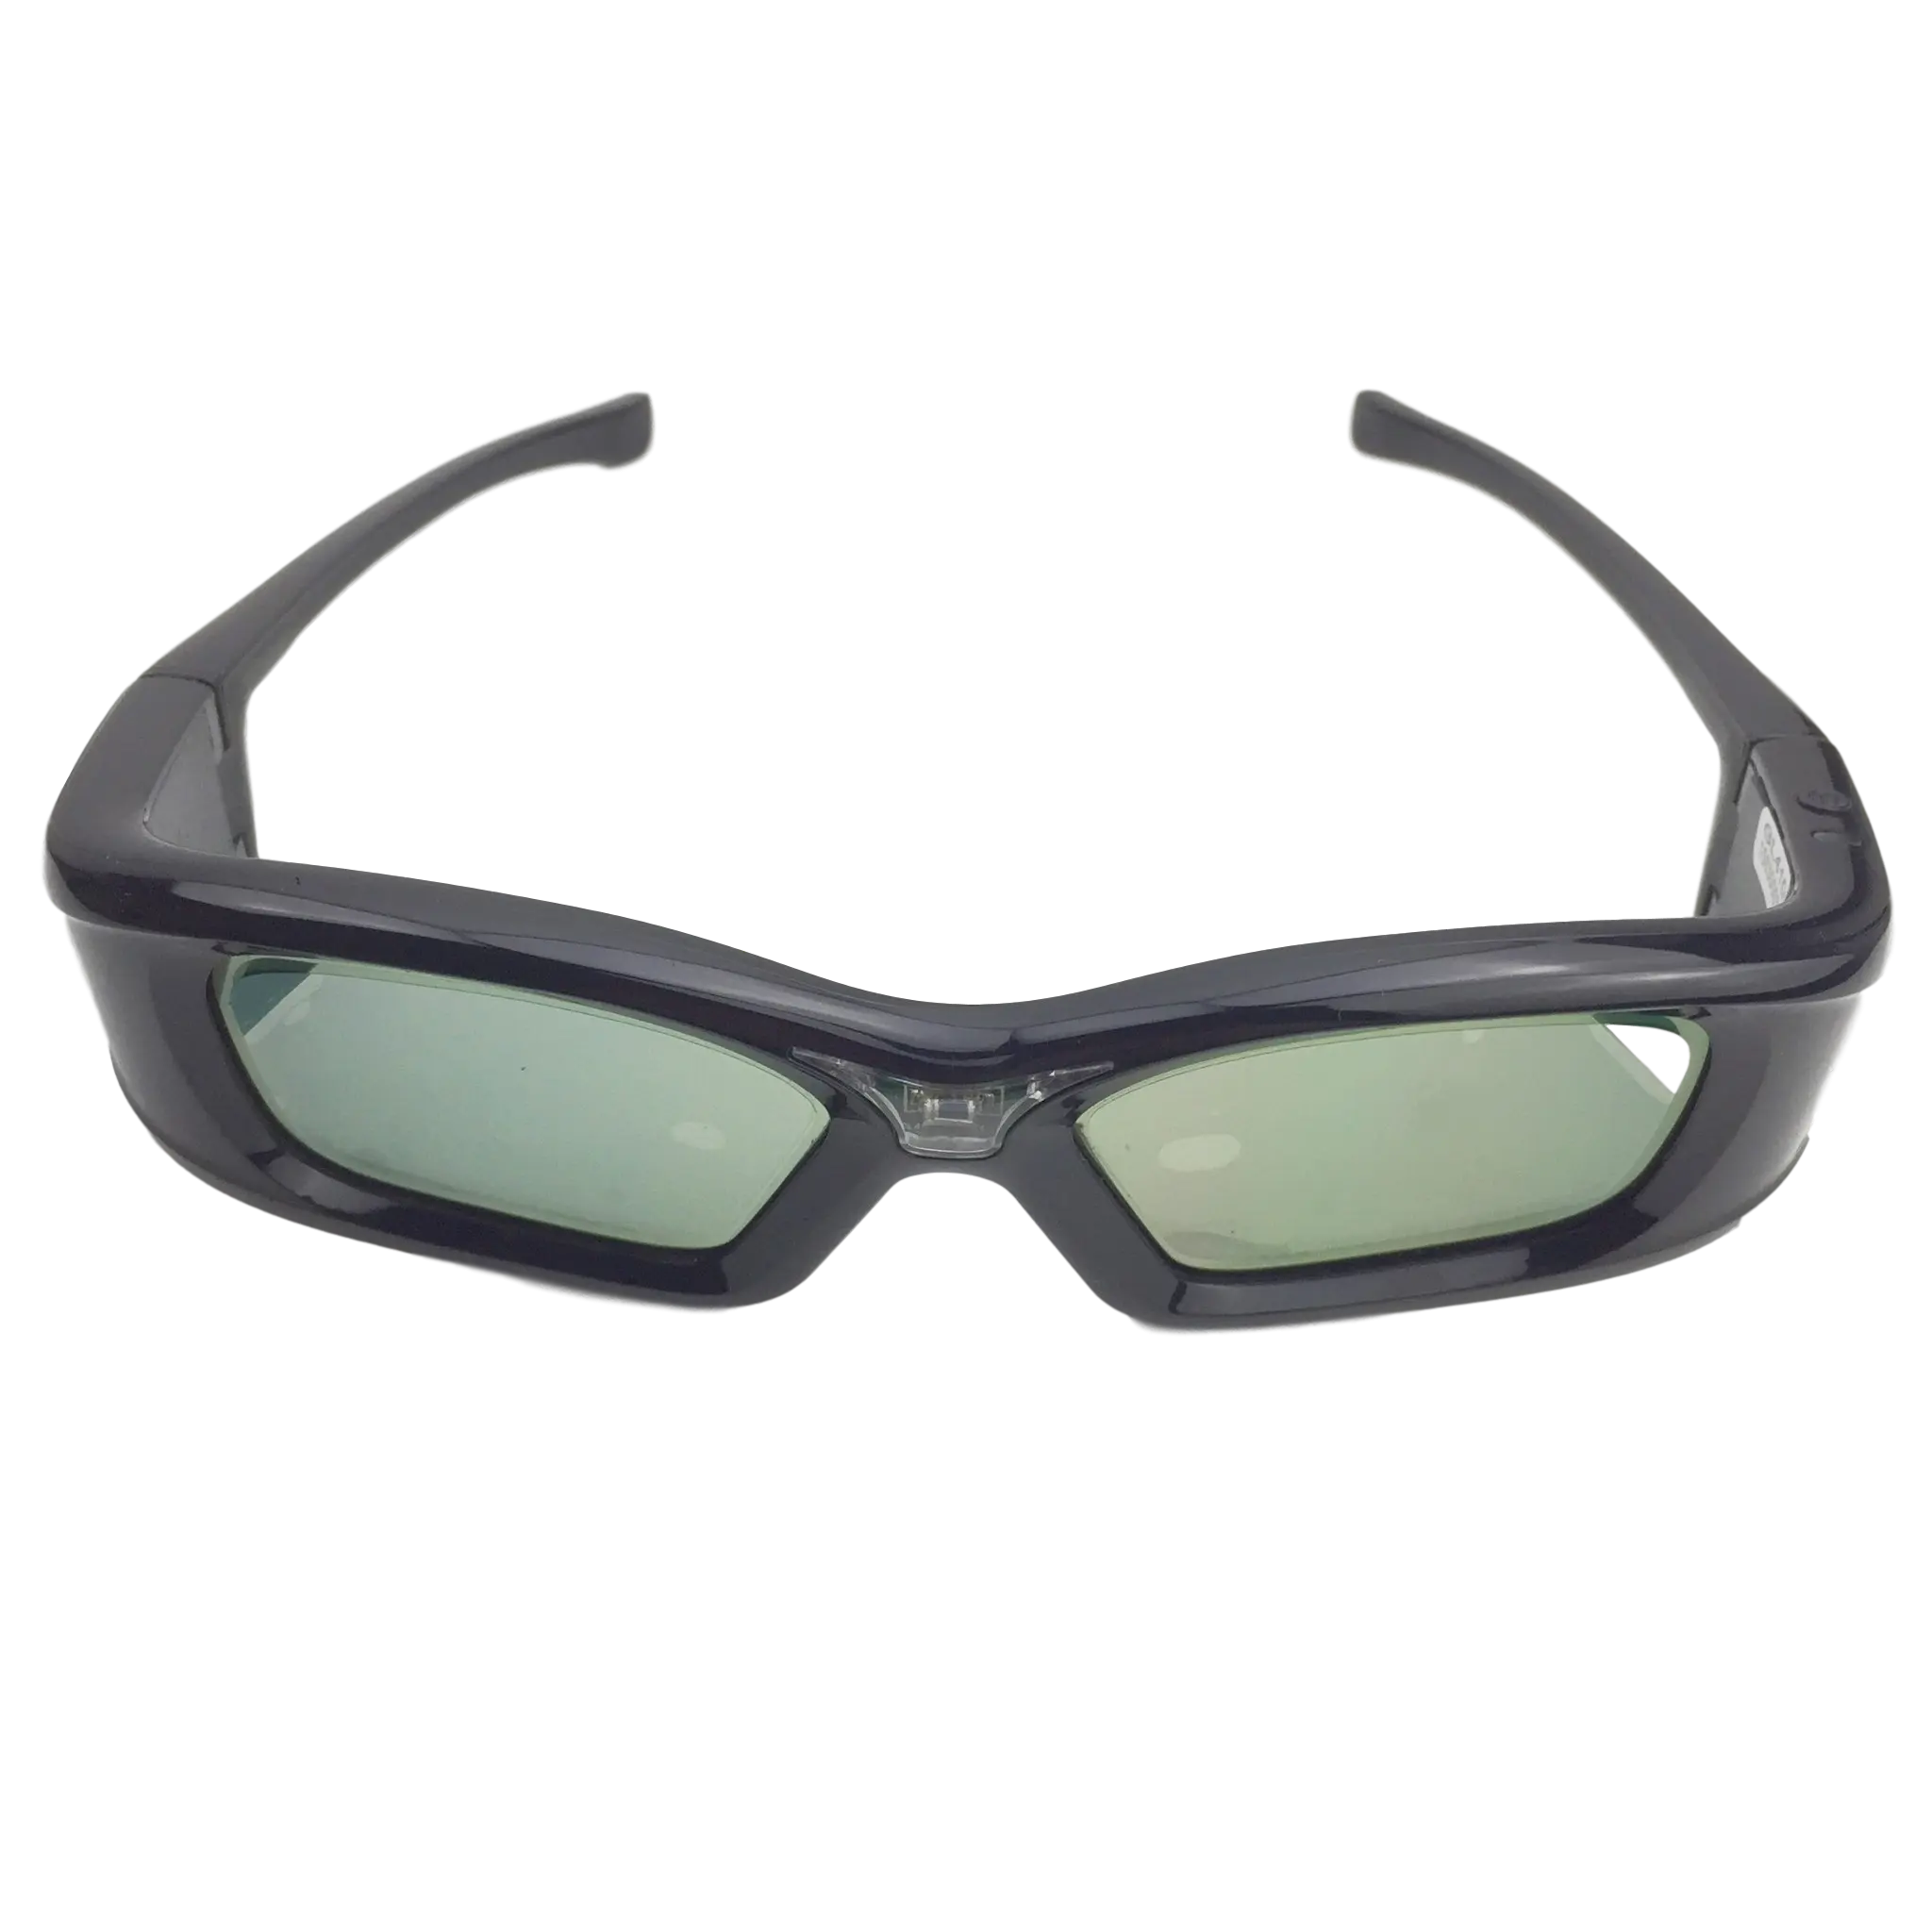 Proiettore Dlp occhiali 3d per proiettore occhiali da sole ologramma 3d occhiali Dlp Link occhiali 3d